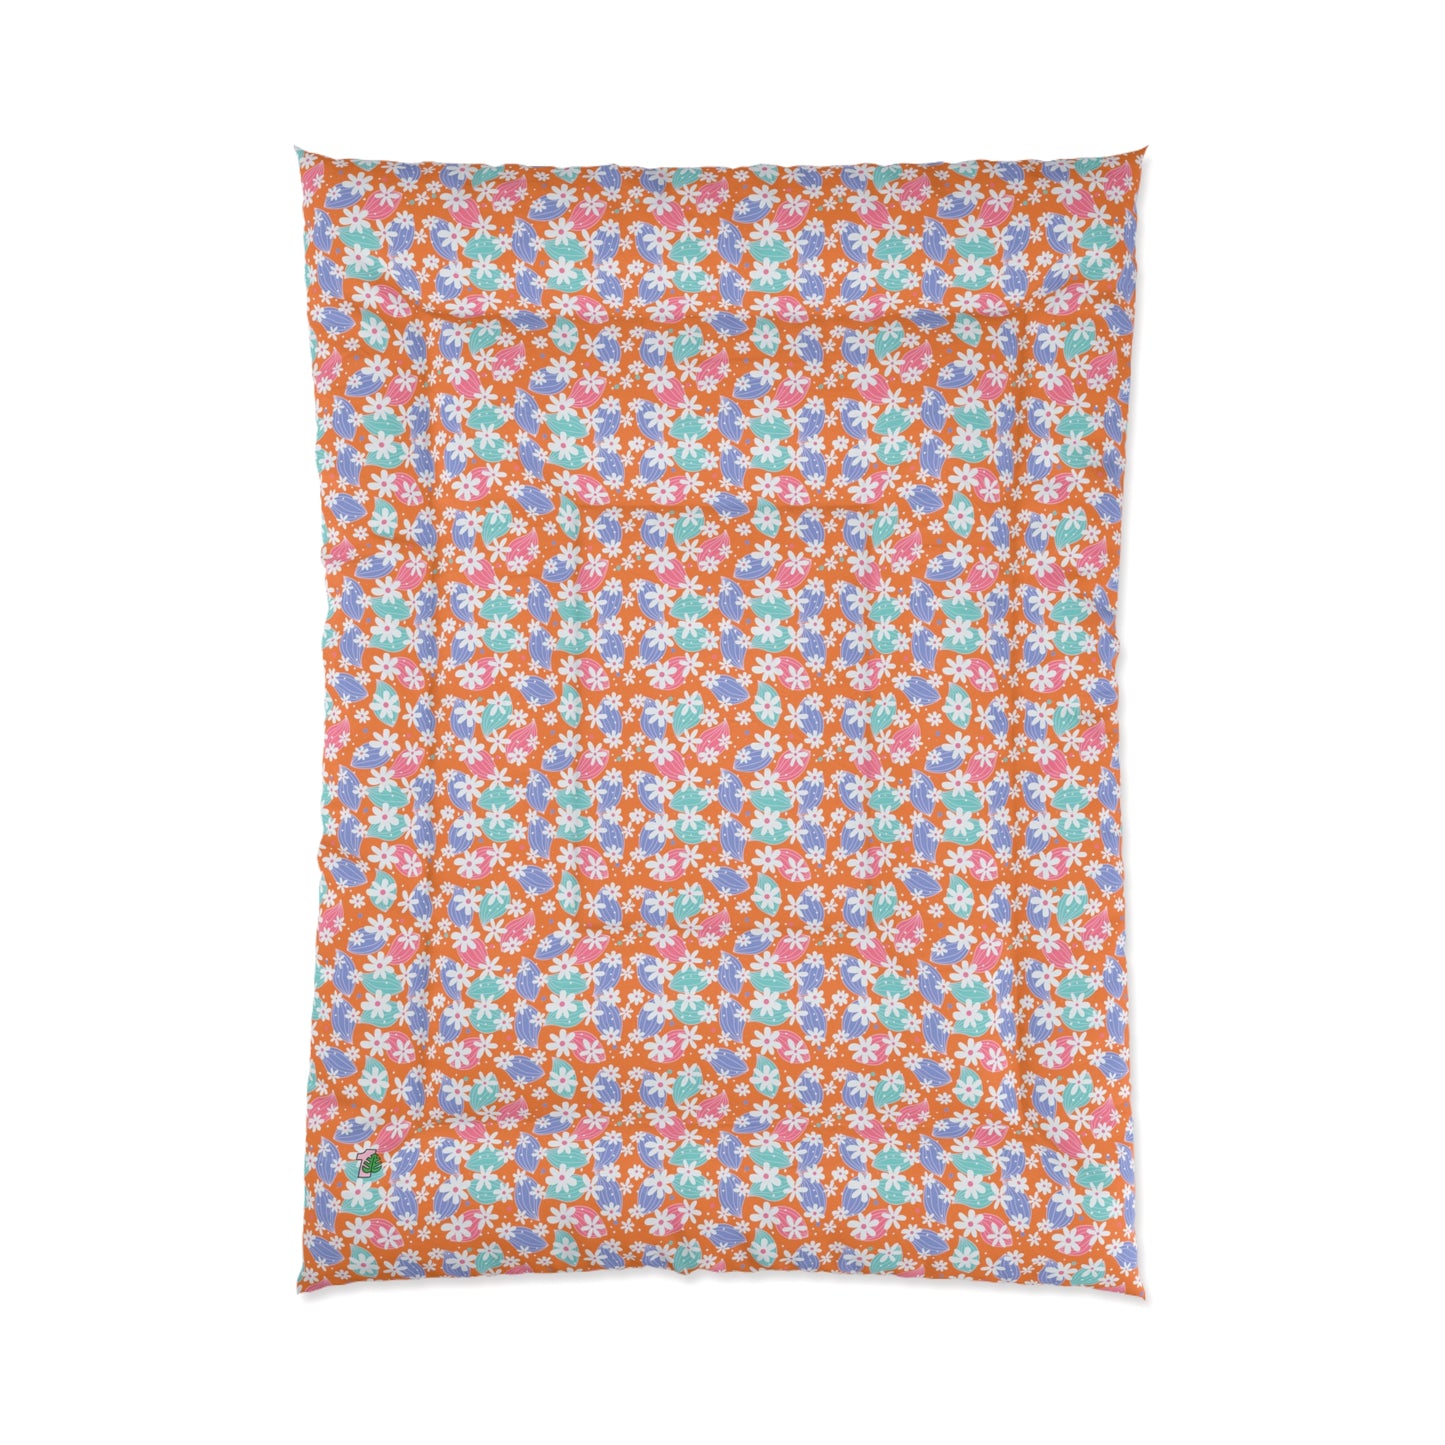 Floral Print Over Orange Comforter